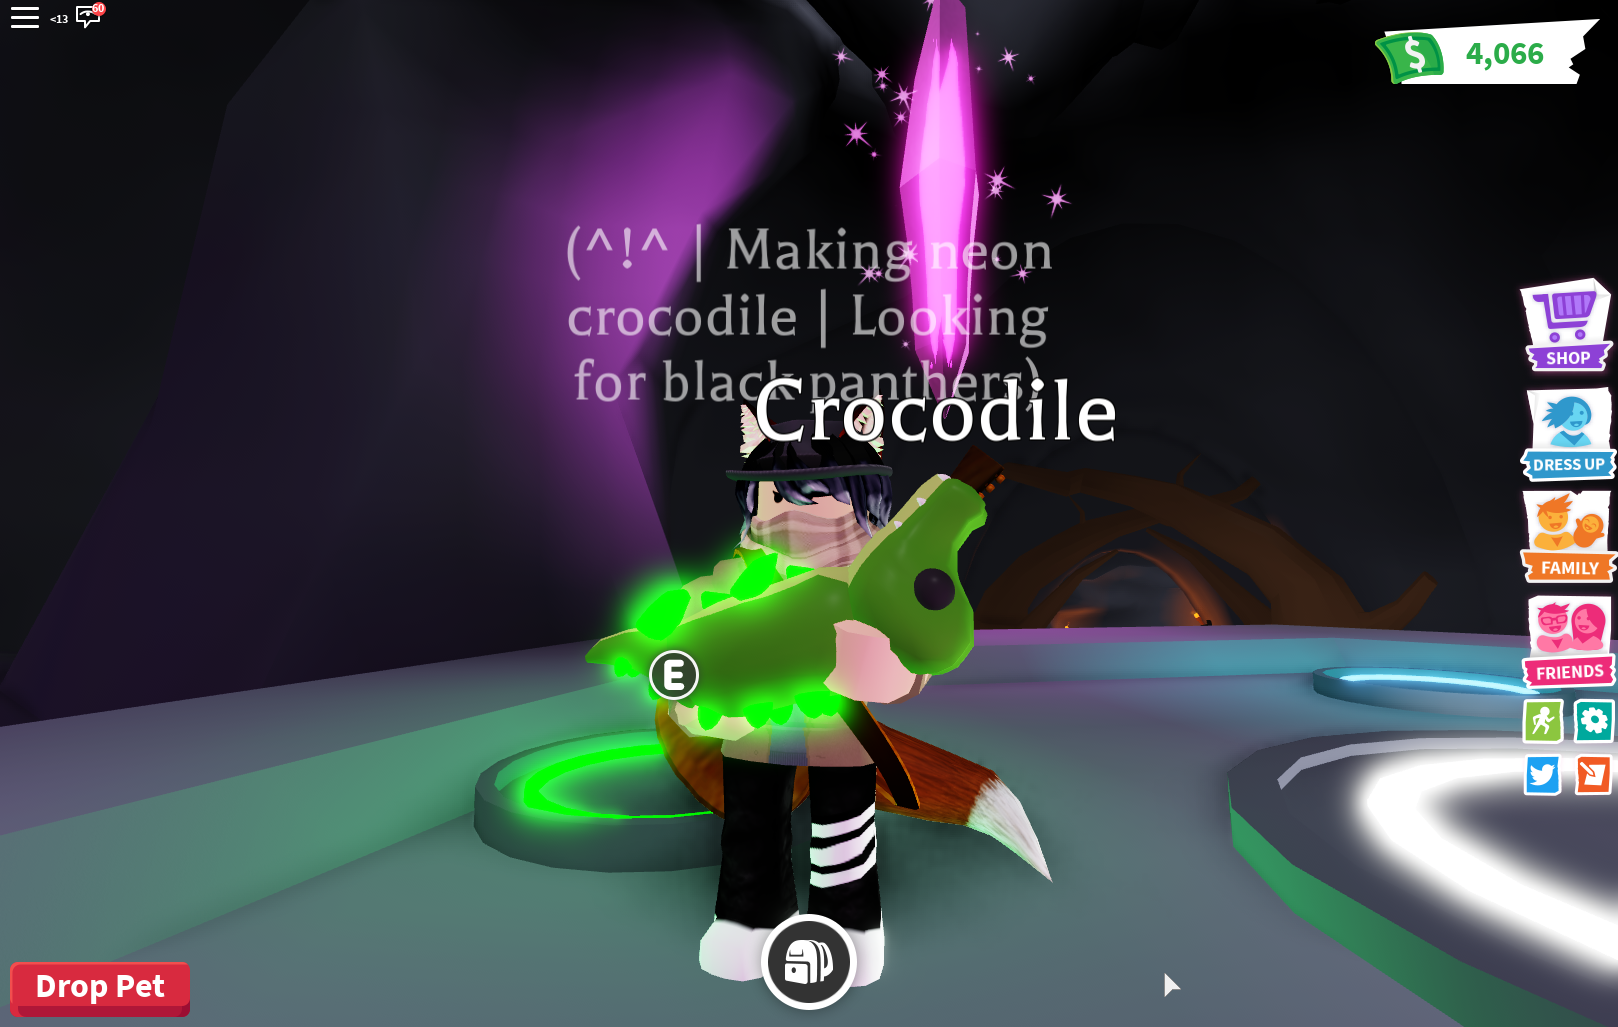 neon croc